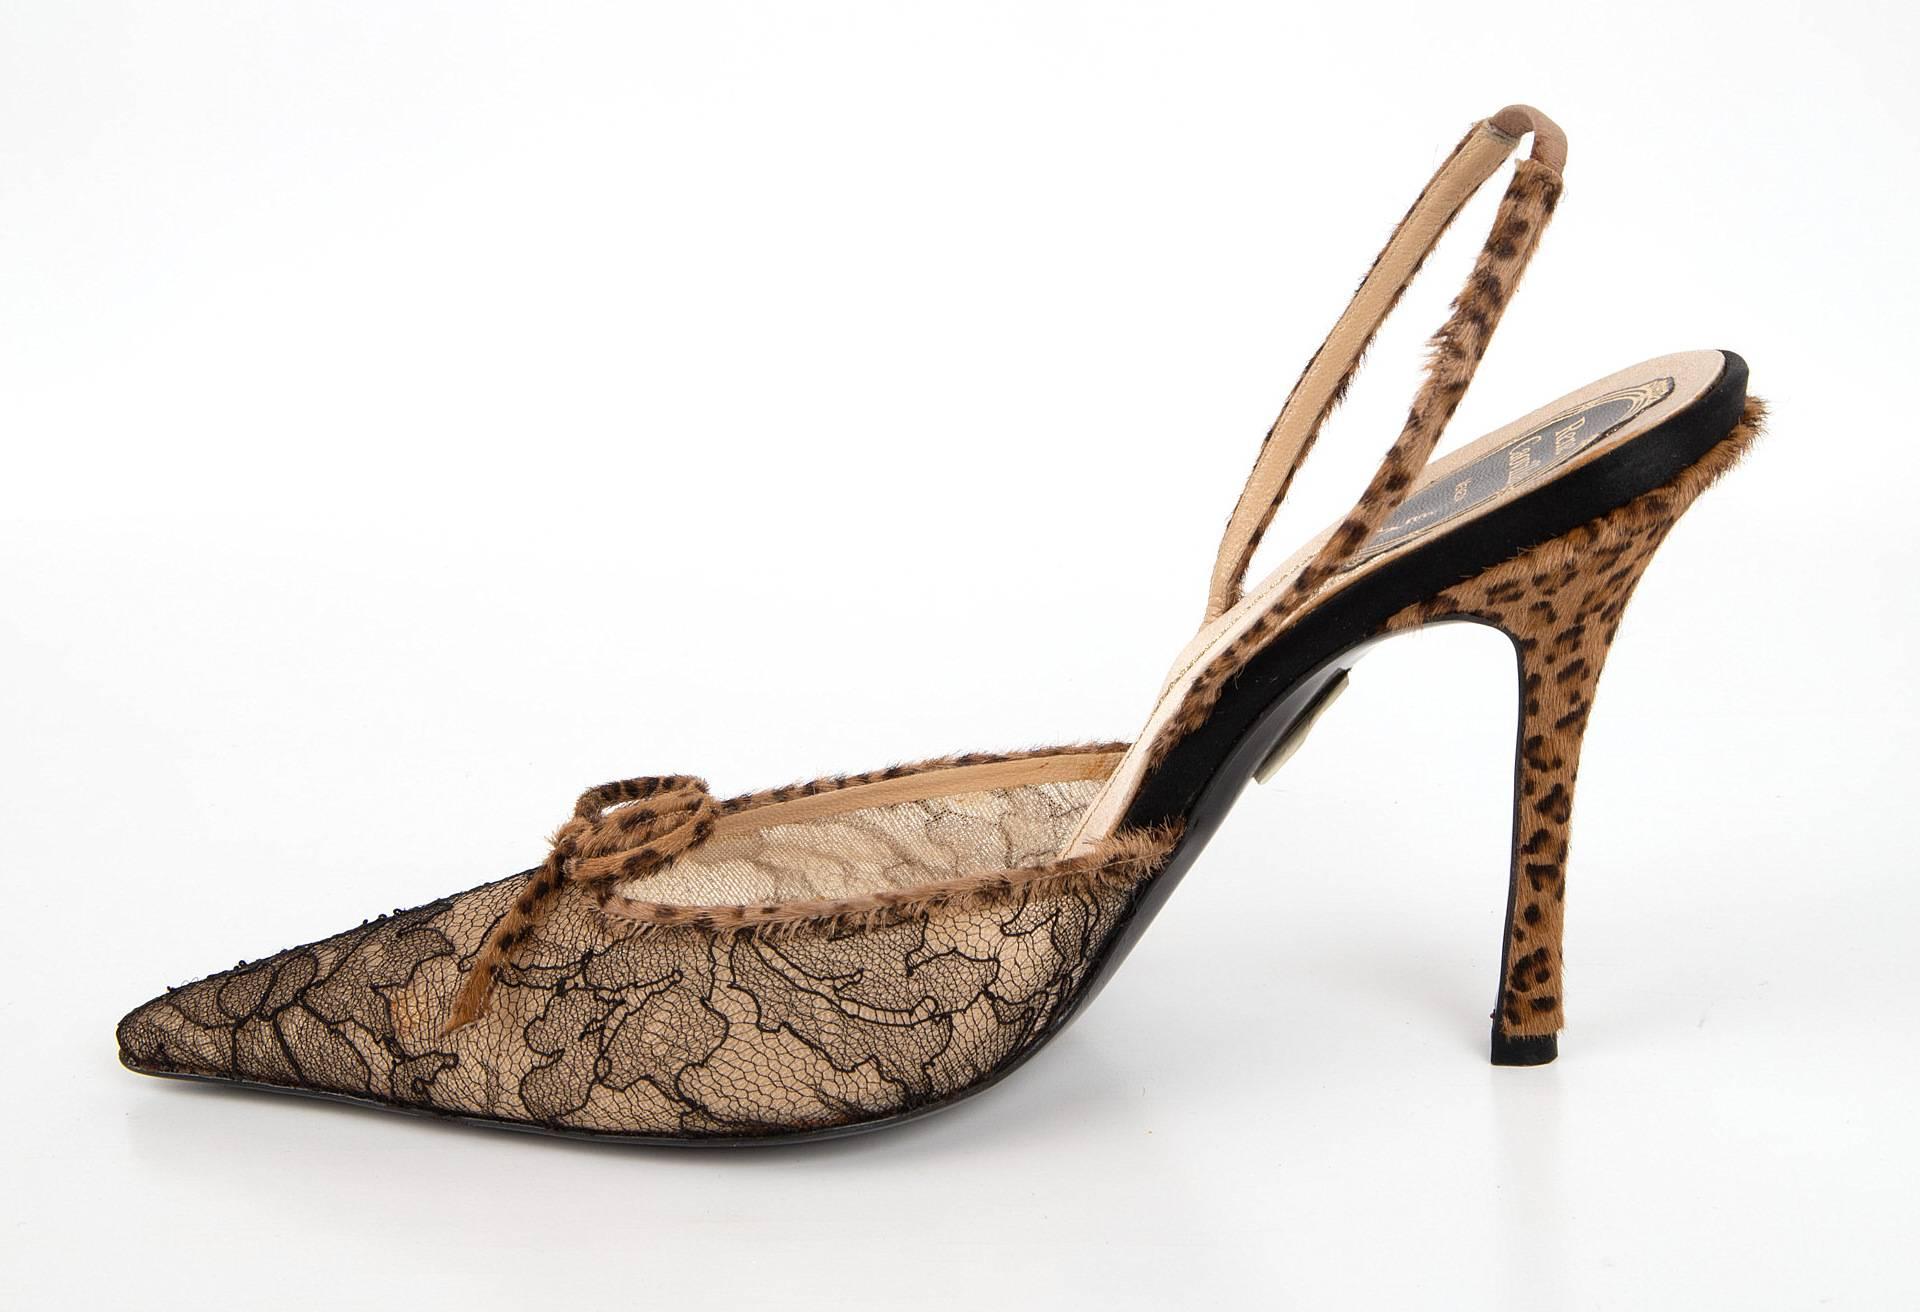 leopard shoe laces